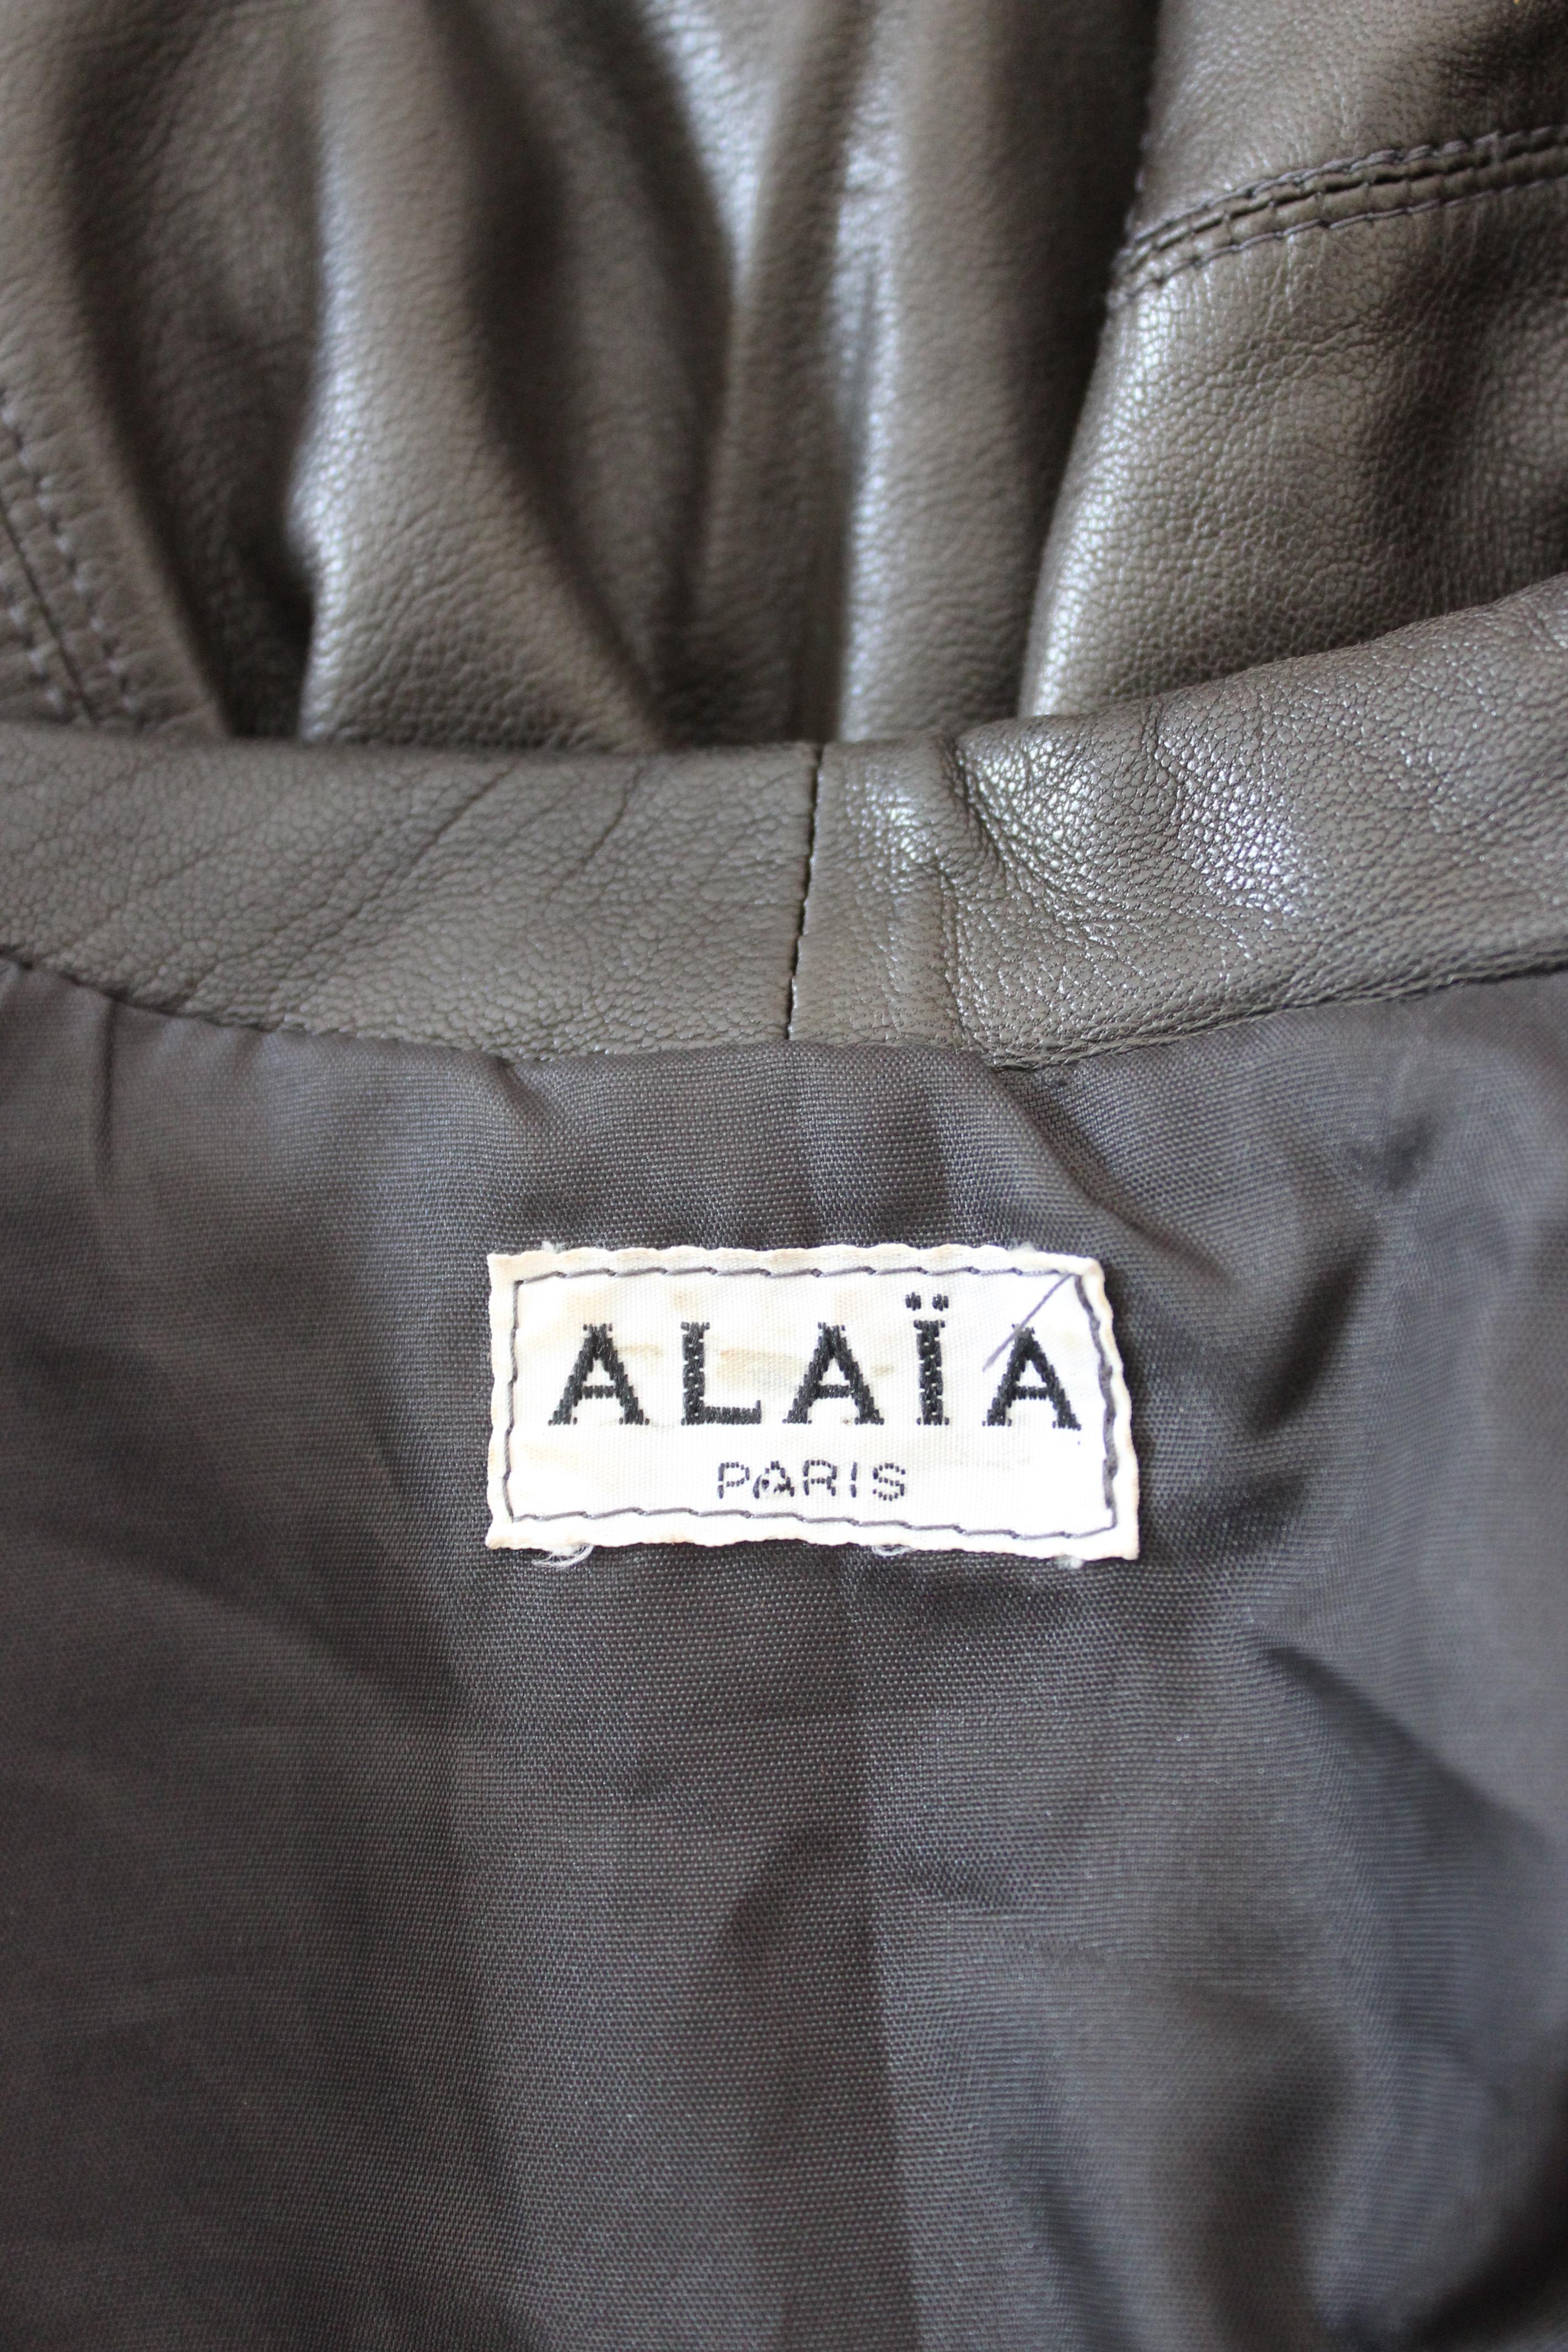 Azzedine Alaia Leather Black Iconic Bolero Jacket 1980 1